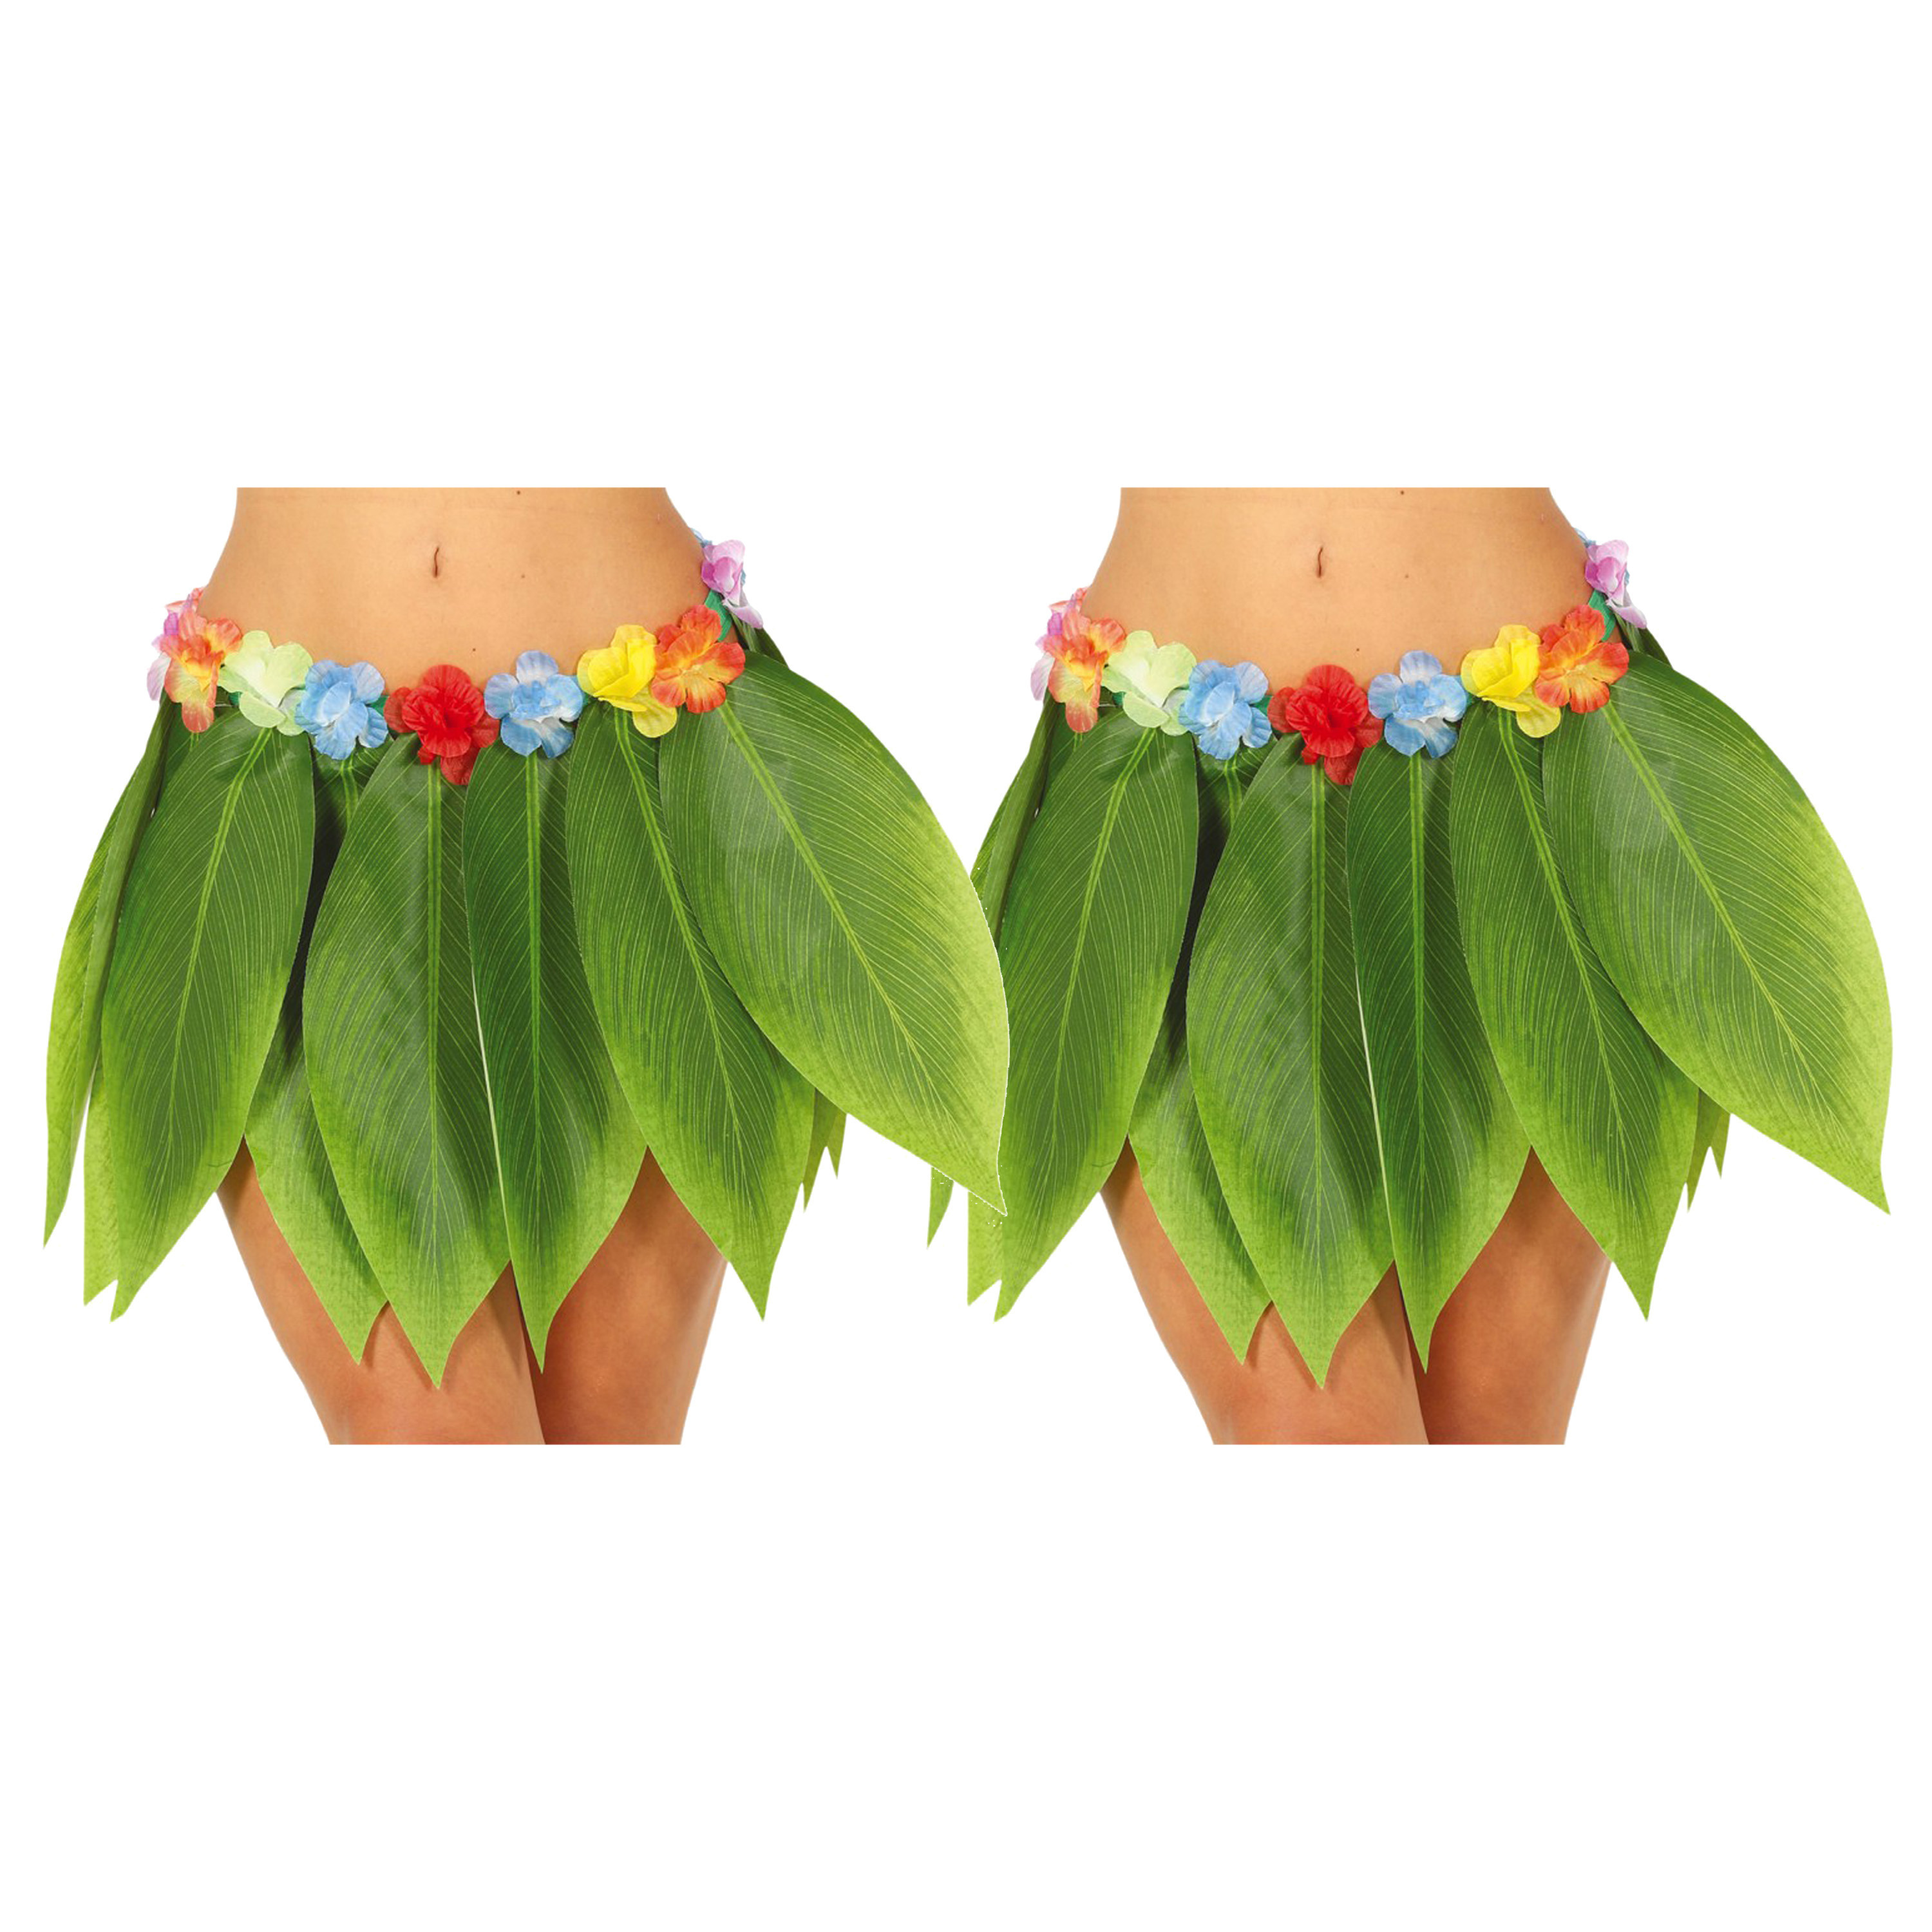 Hawaii verkleed rokje met bladeren 2x voor volwassenen groen 38 cm hoela rokje tropisch